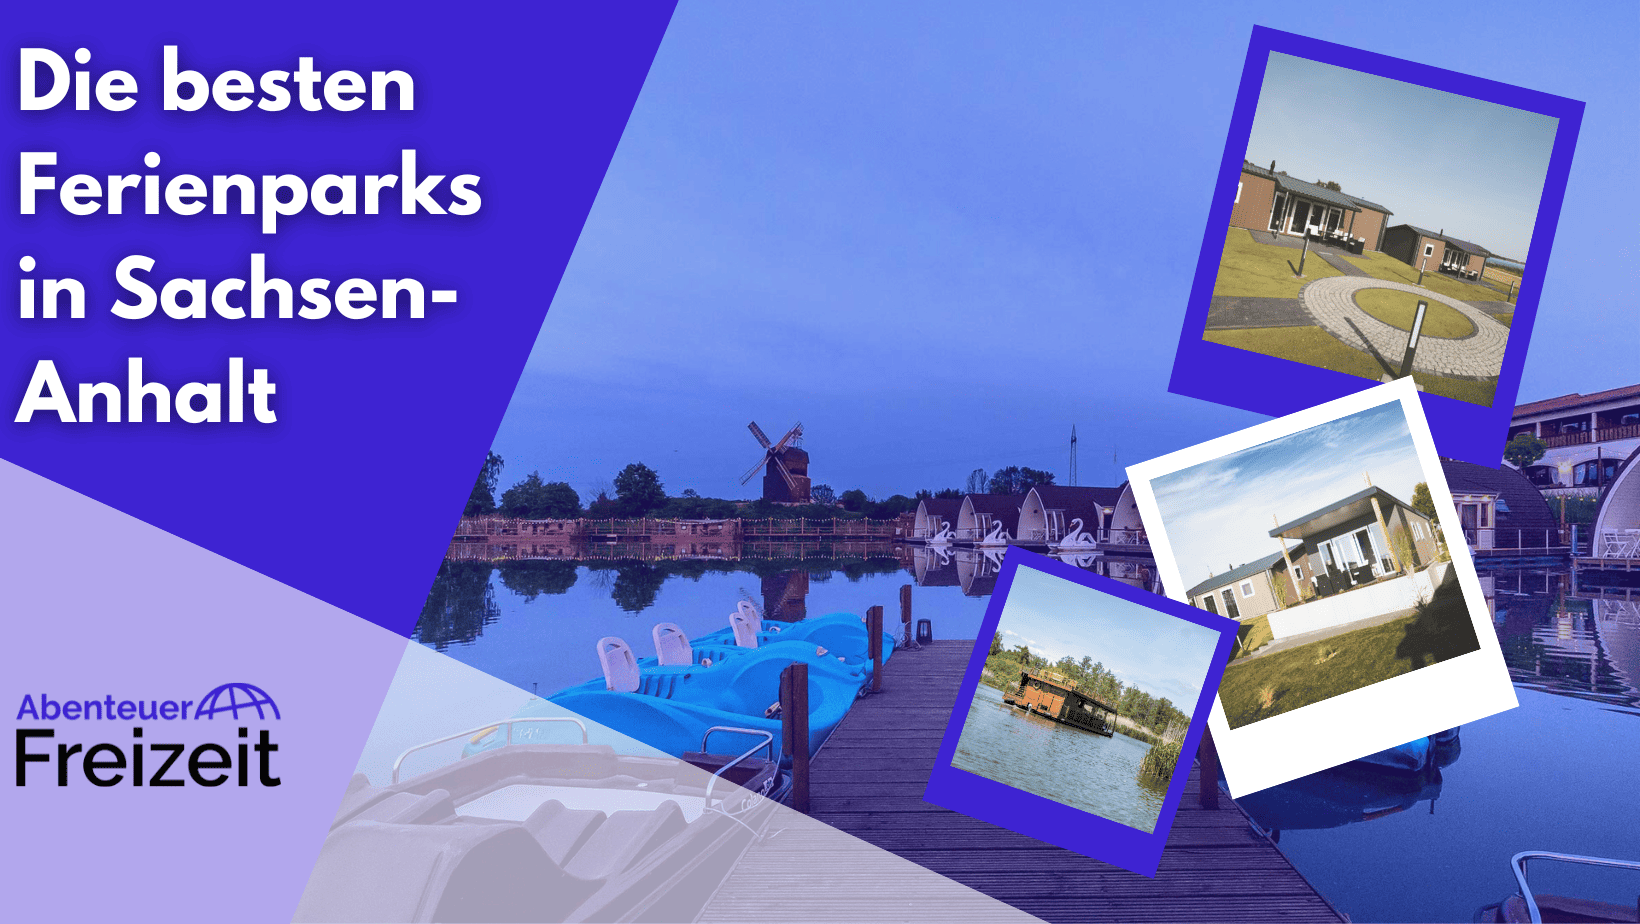 Die besten Ferienparks in Sachsen-Anhalt